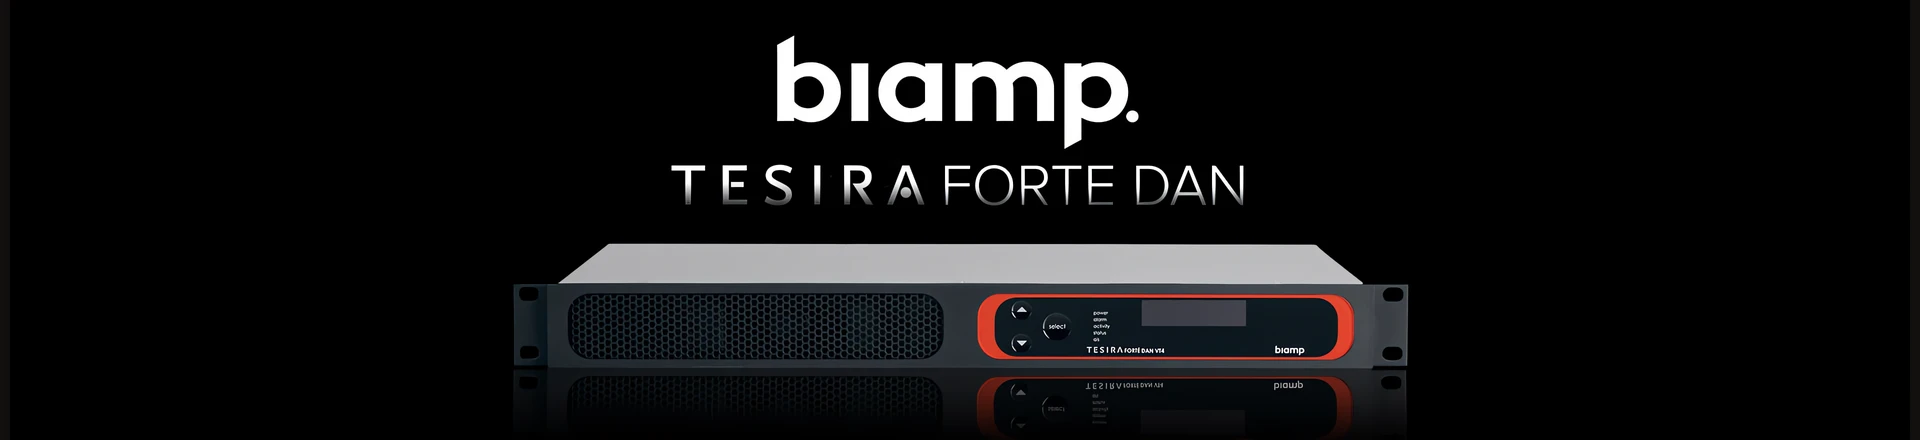 Biamp zaprezentował nowe procesory sygnałowe TesiraFORTE DAN